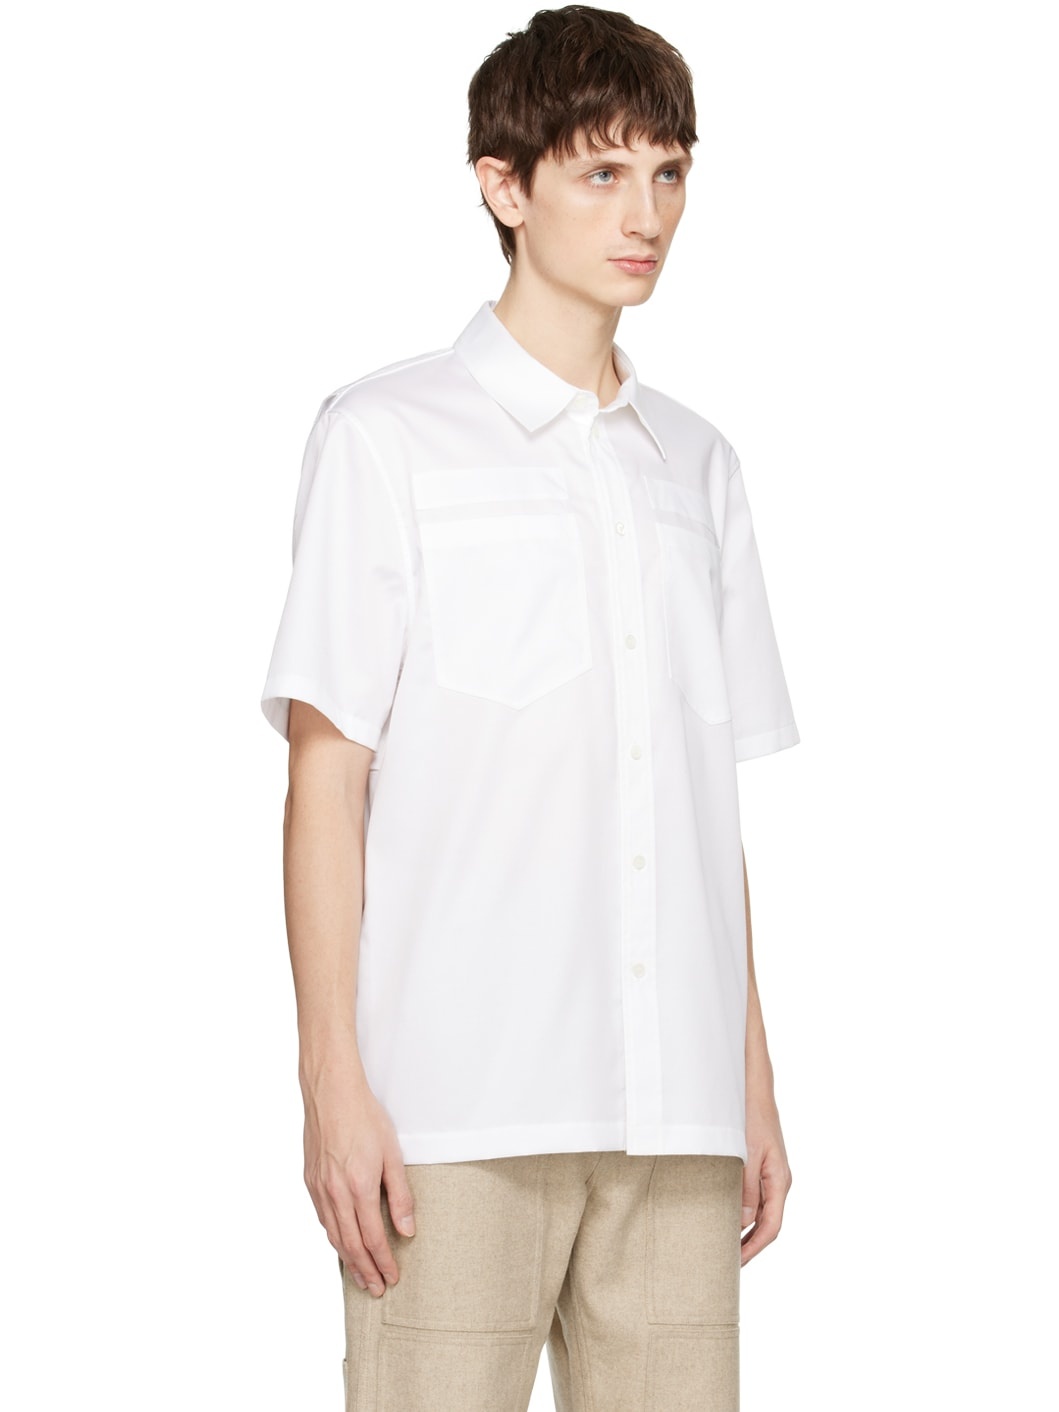 White Utility Shirt - 2